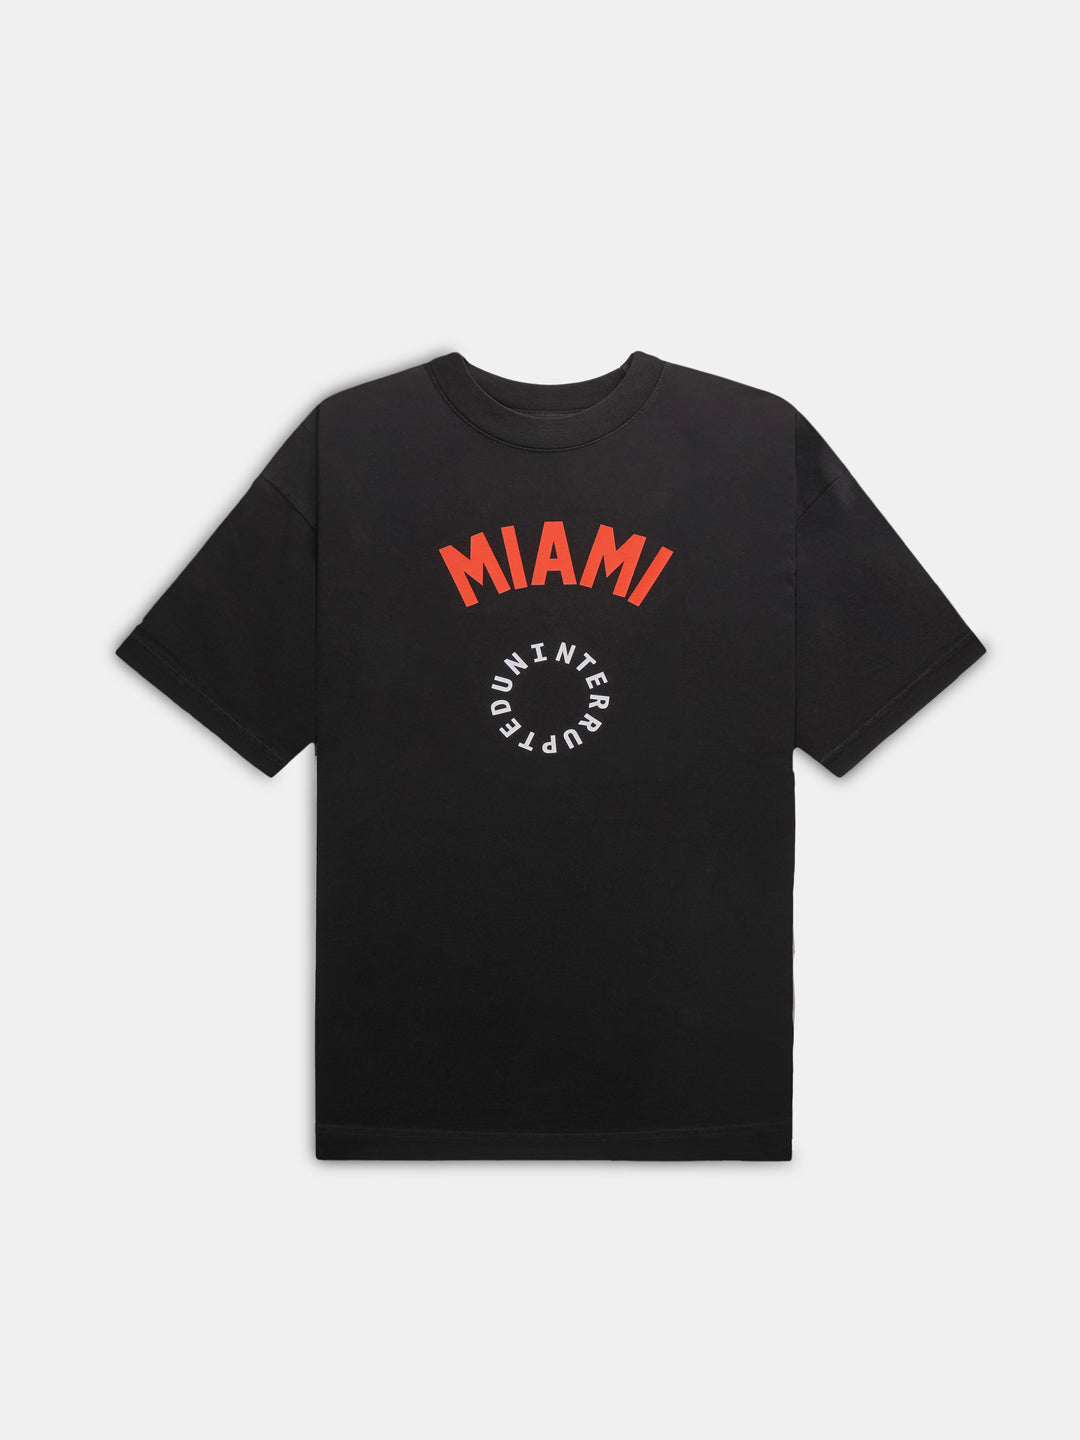 Miami Circle Logo Tee Black- front